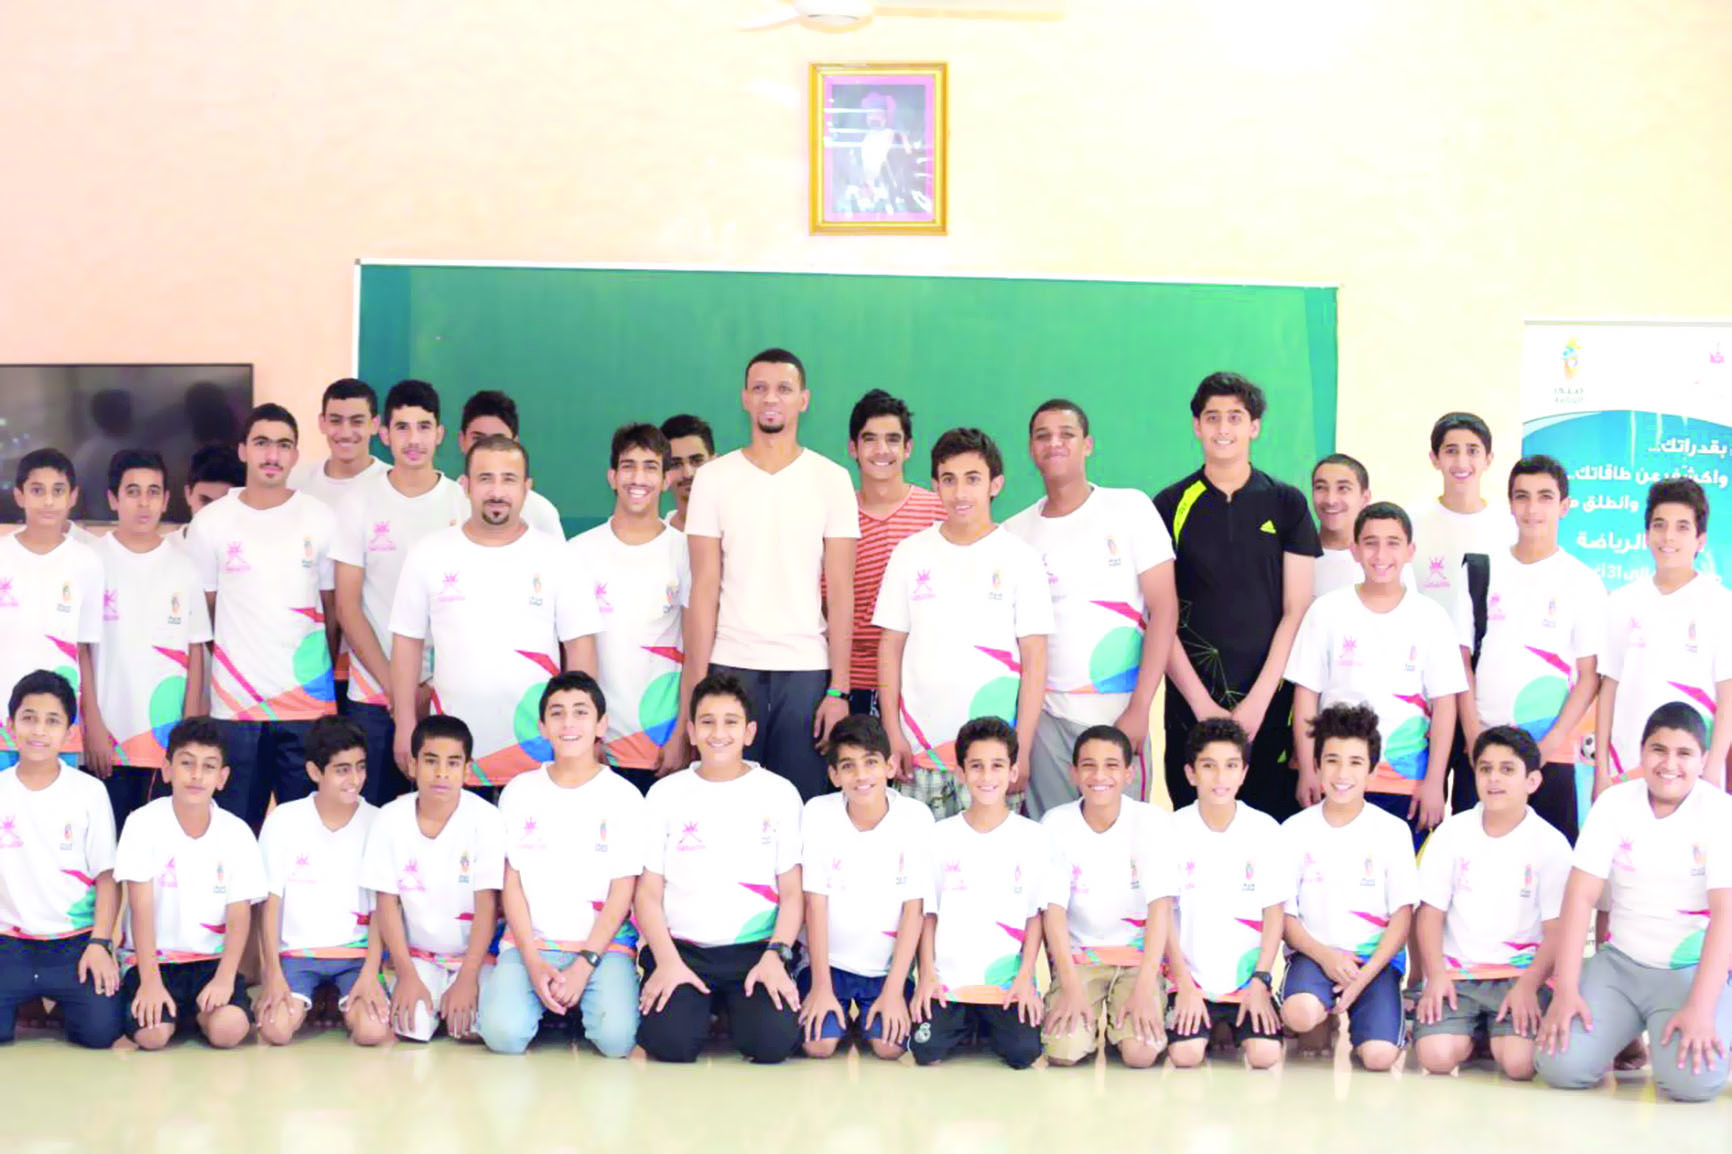 فعاليات متنوعة في انطلاق برنامج صيف الرياضة بمحافظة مسقط